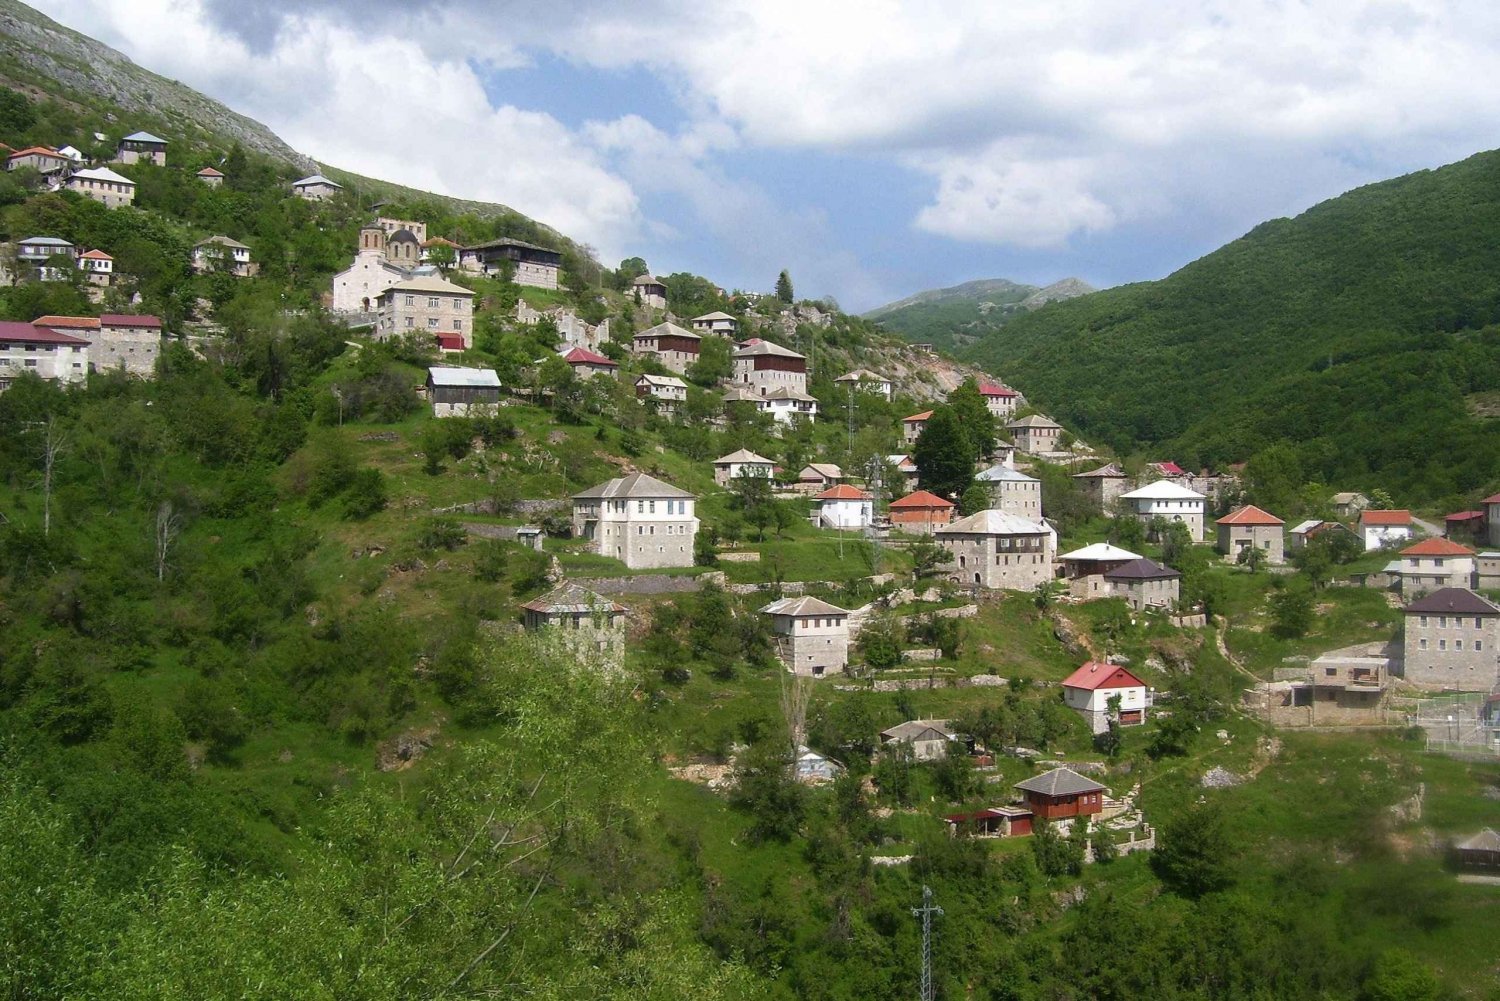 Von Skopje aus: Galicnik - Medenica Peak Hike Experience